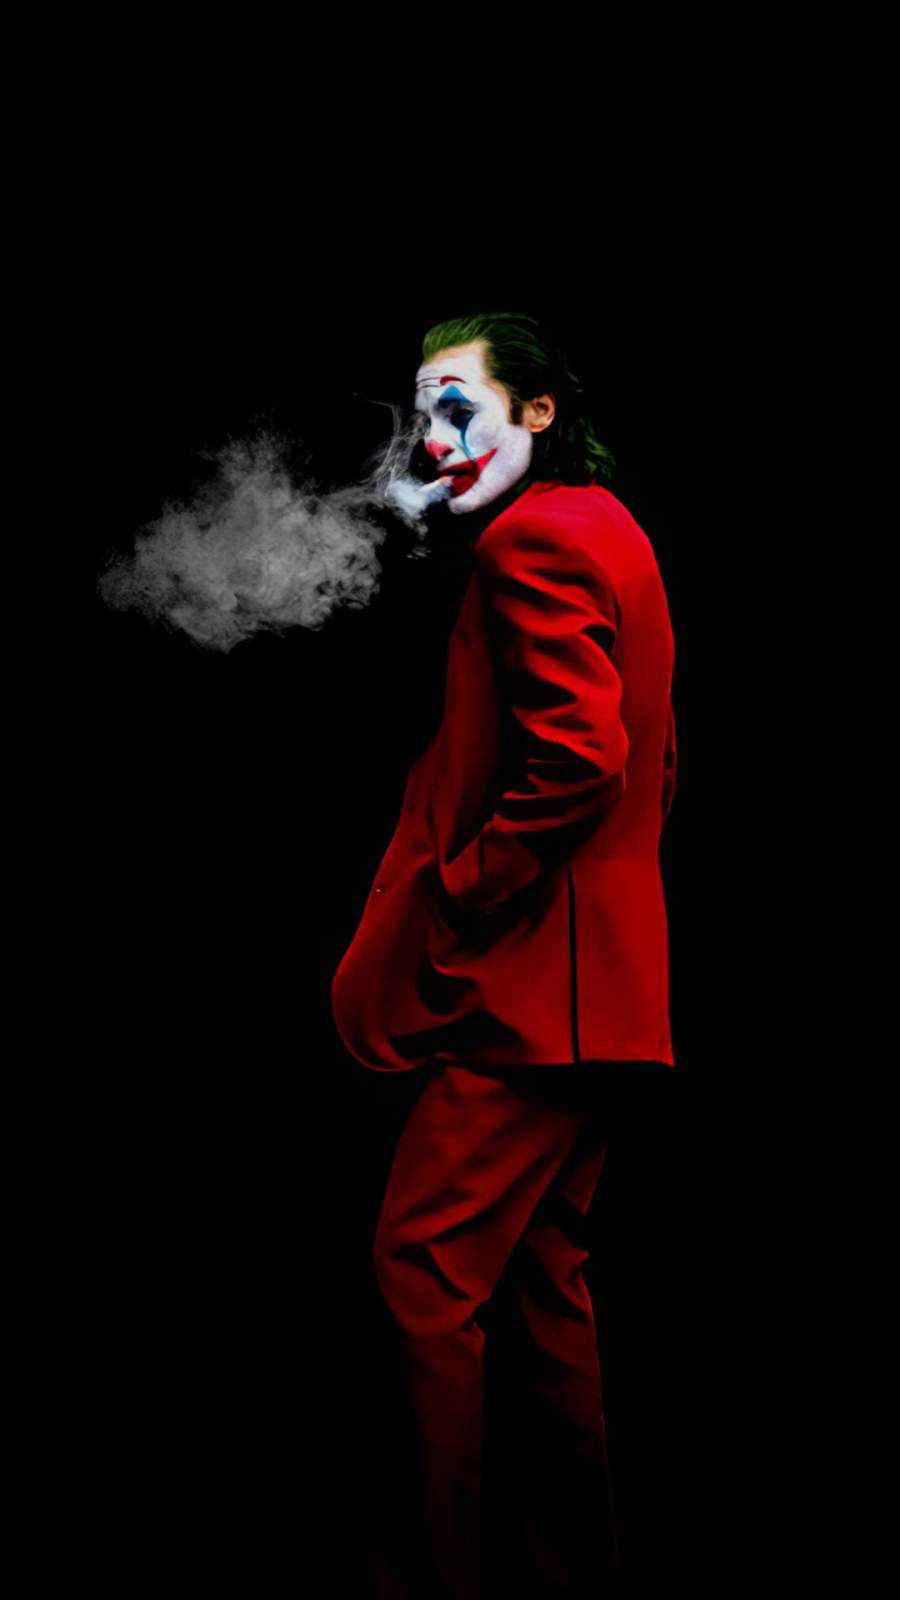 Hình Joker hút thuốc cực đẹp